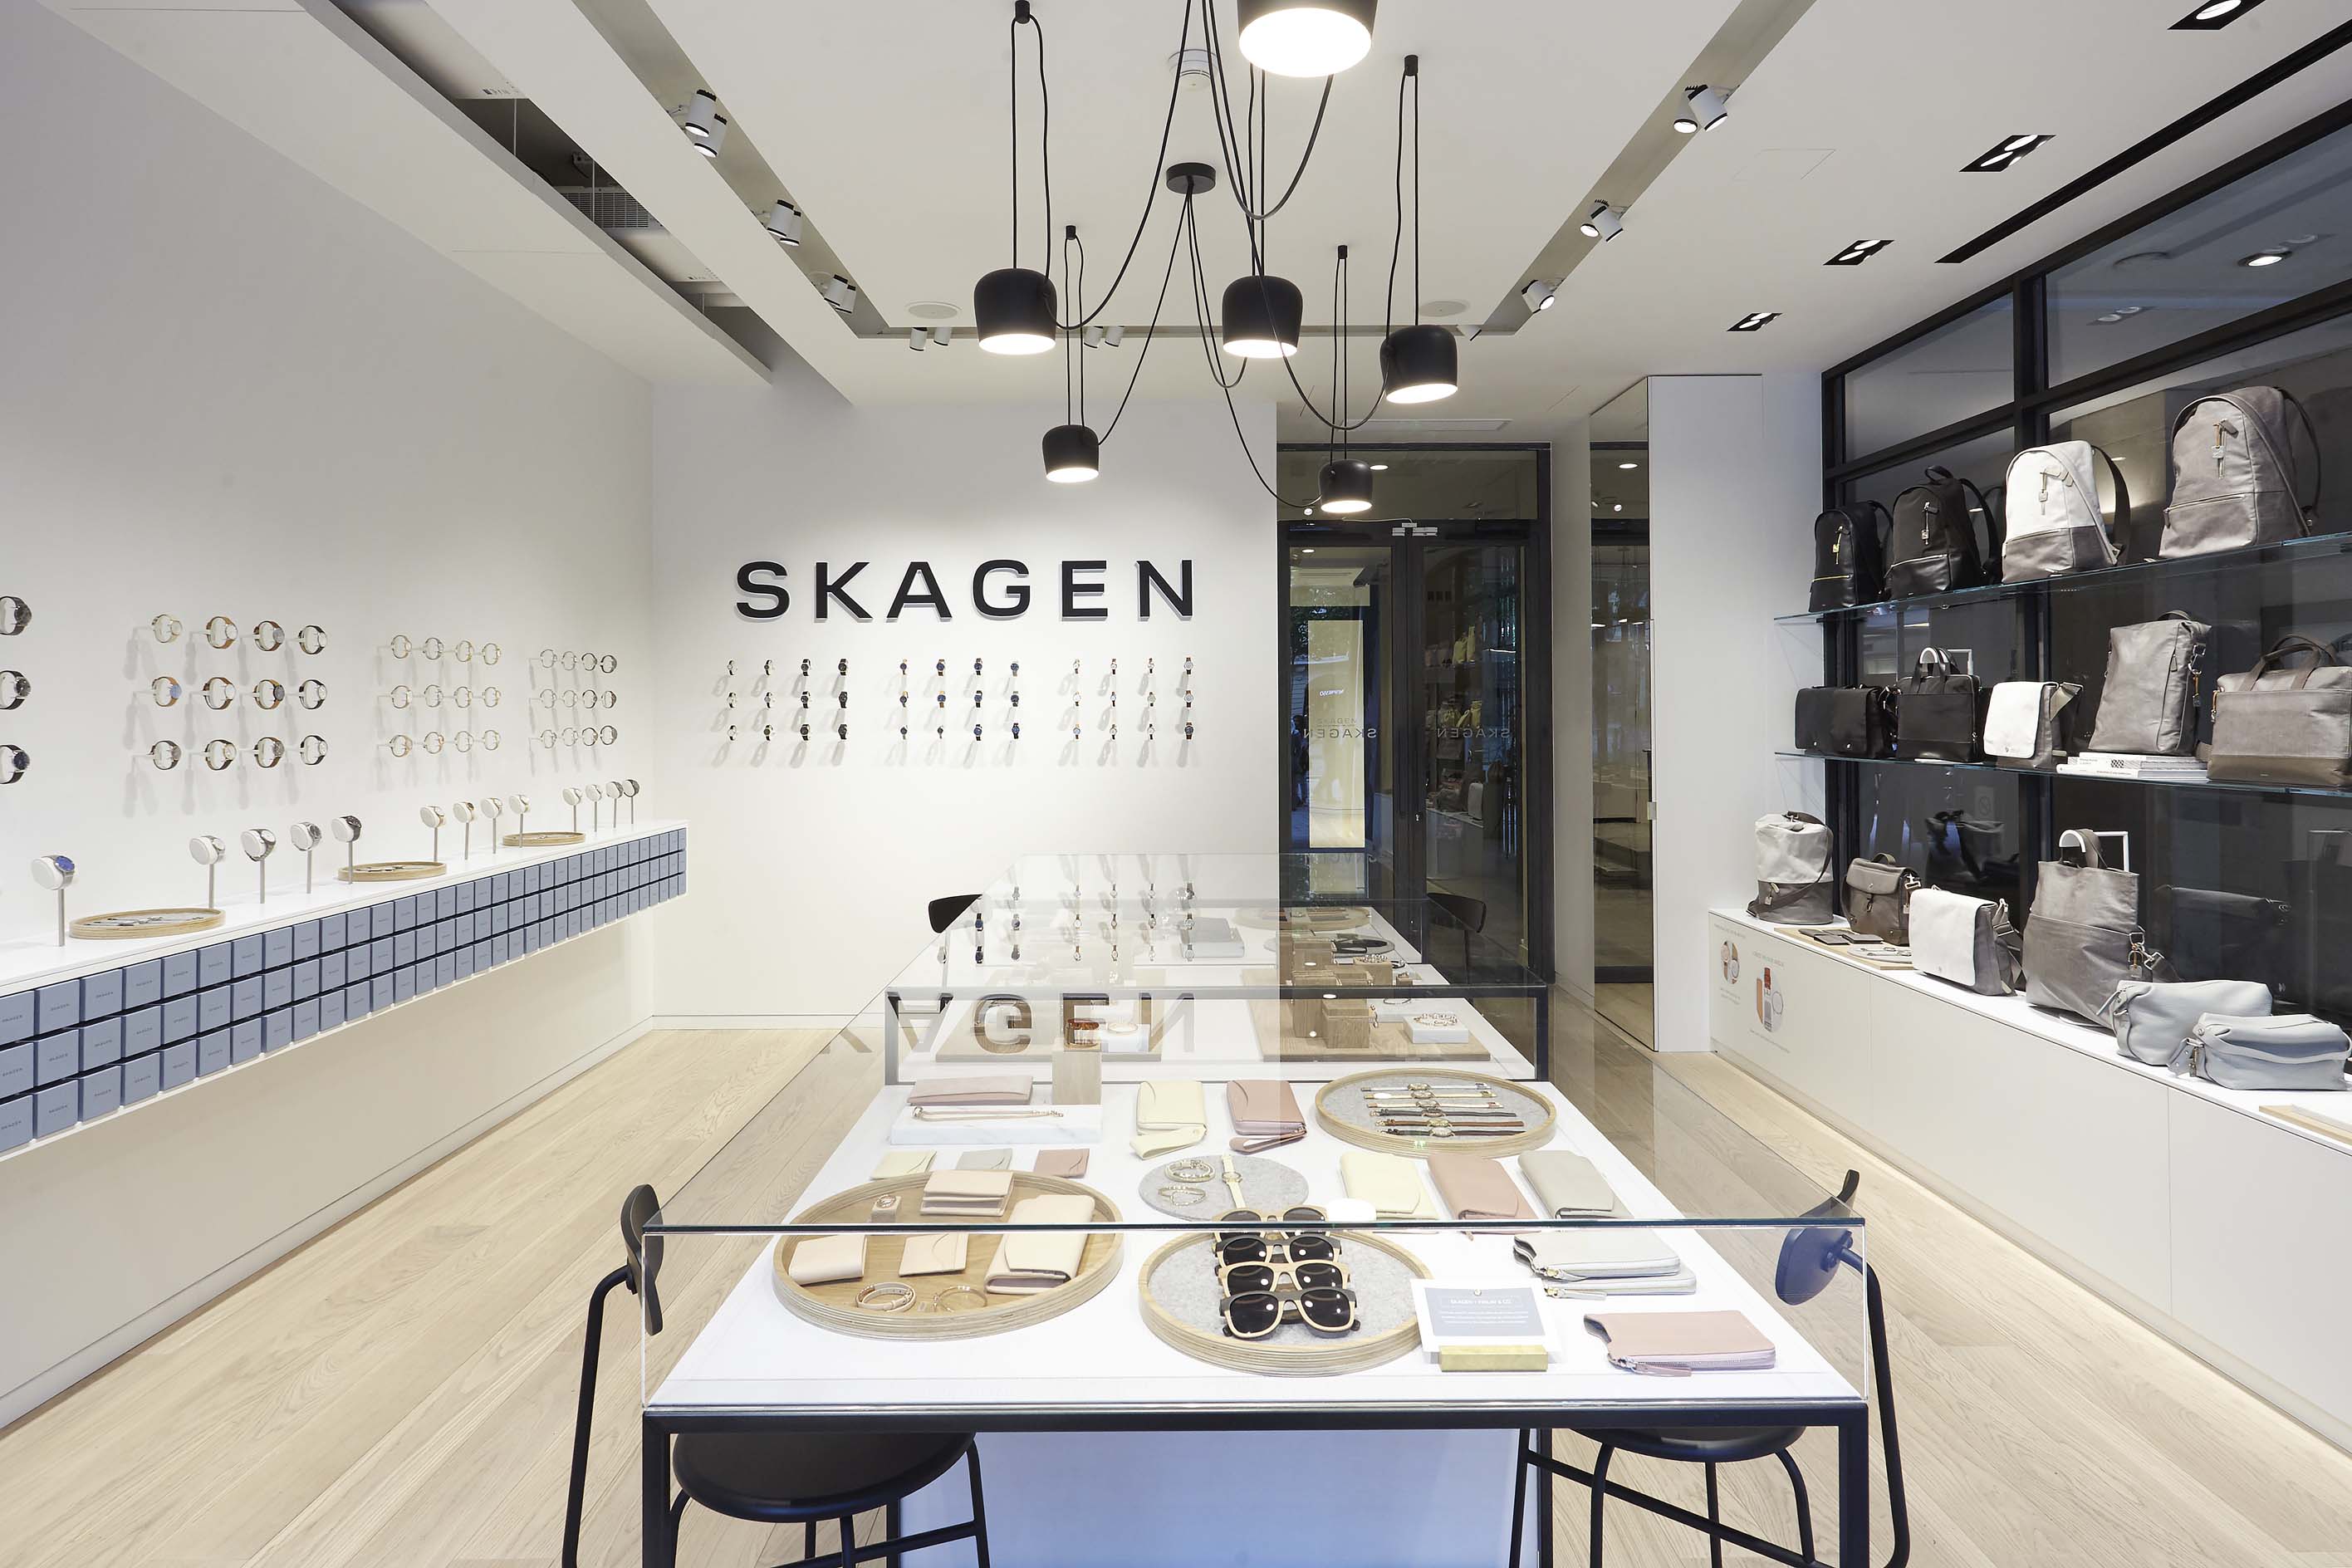 Skagen Parigi: la nuova boutique francese, le foto